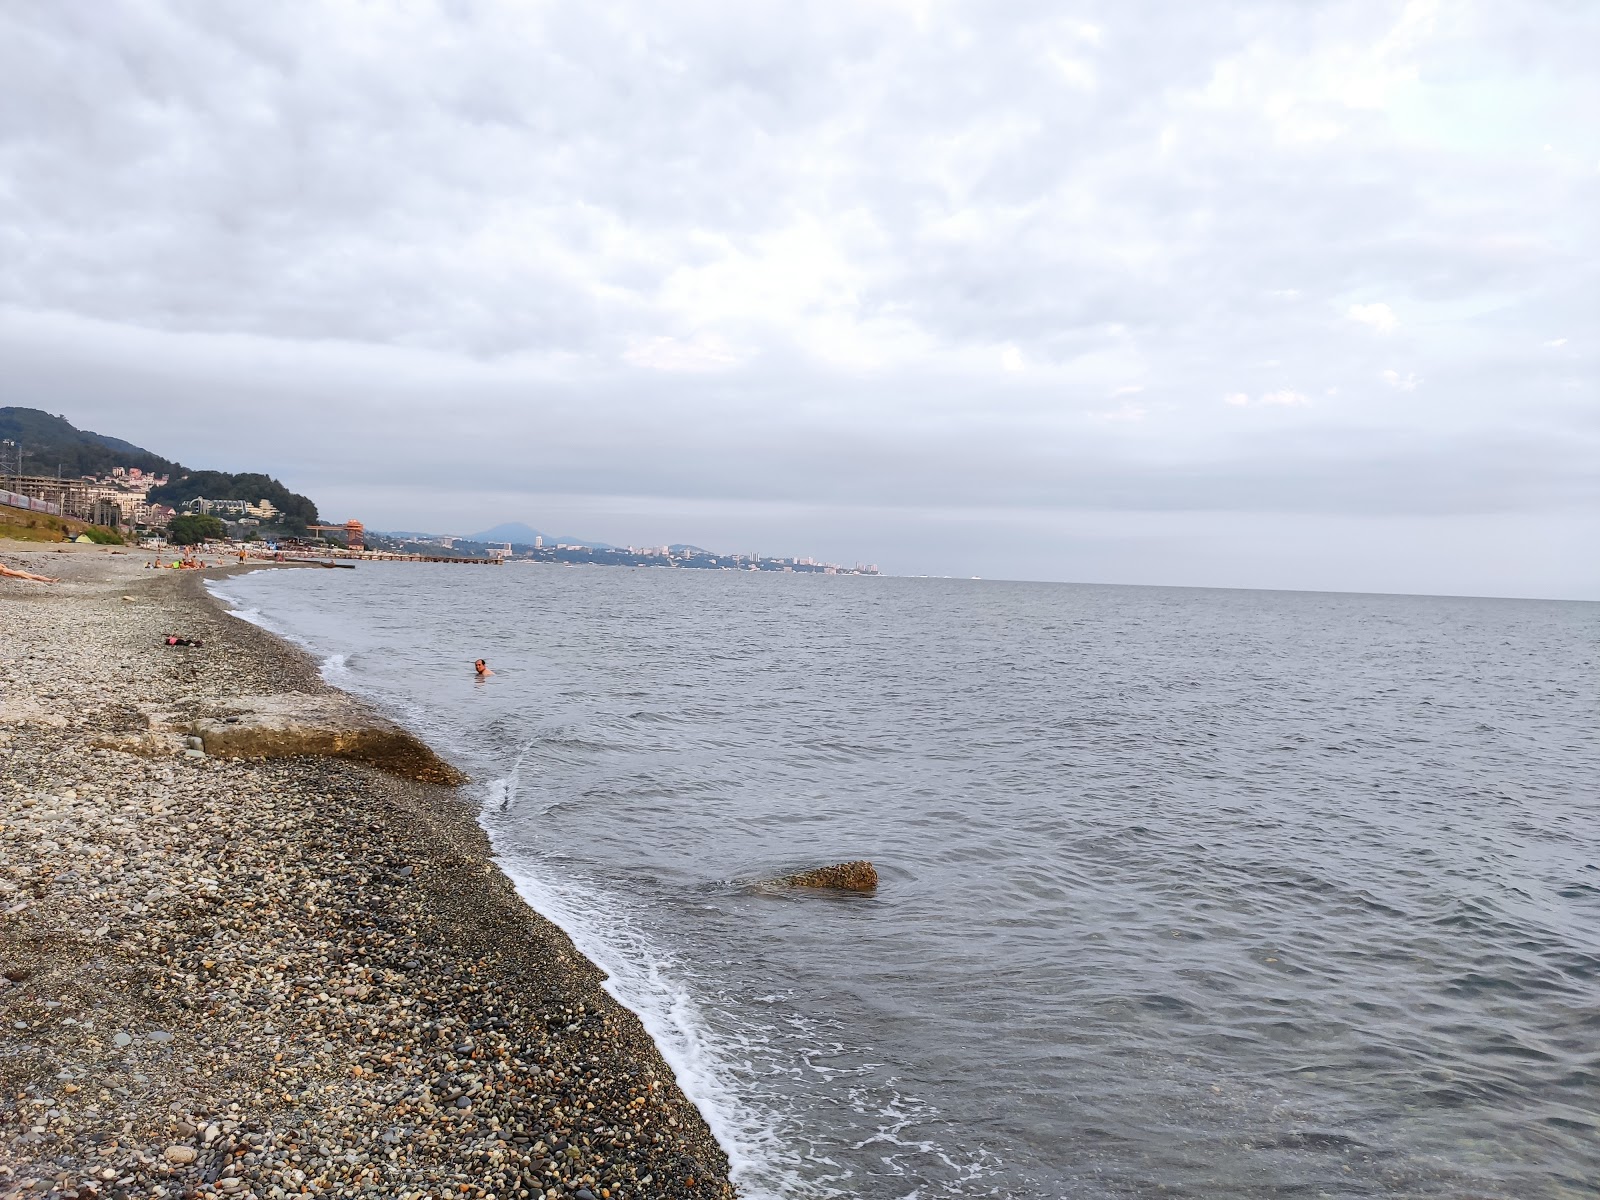 Dagomys beach II'in fotoğrafı geniş plaj ile birlikte